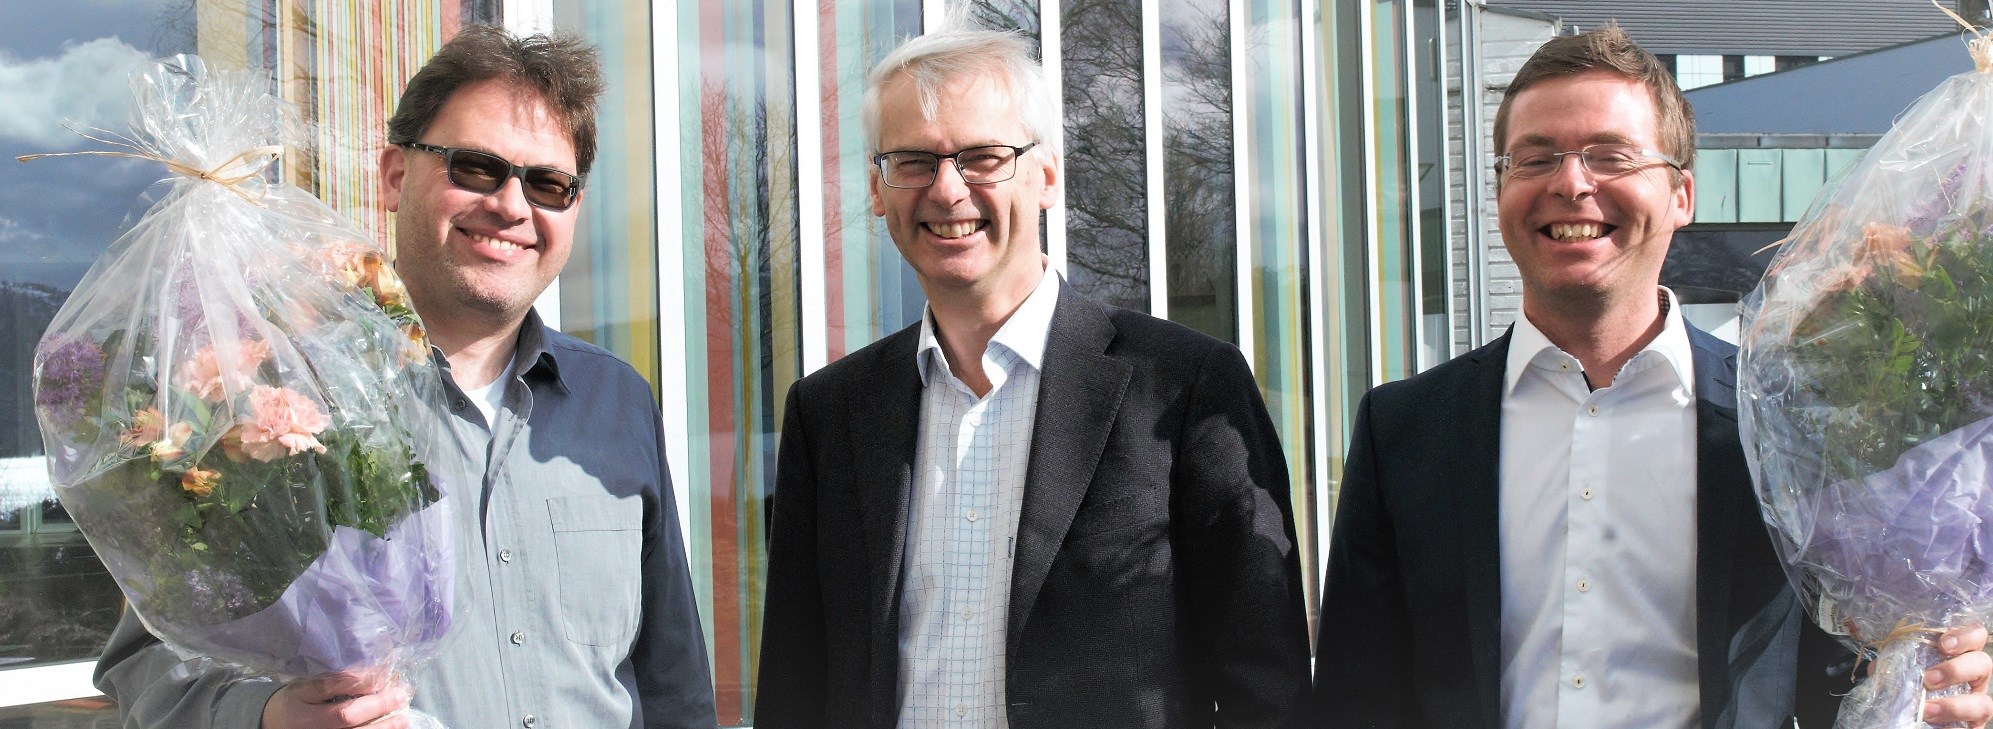 Dirk Schindler og Trond M. Døskeland er offisielt utnevnt til professorer av rektor og professor i samfunnsøkonomi, Øystein Thøgersen. 